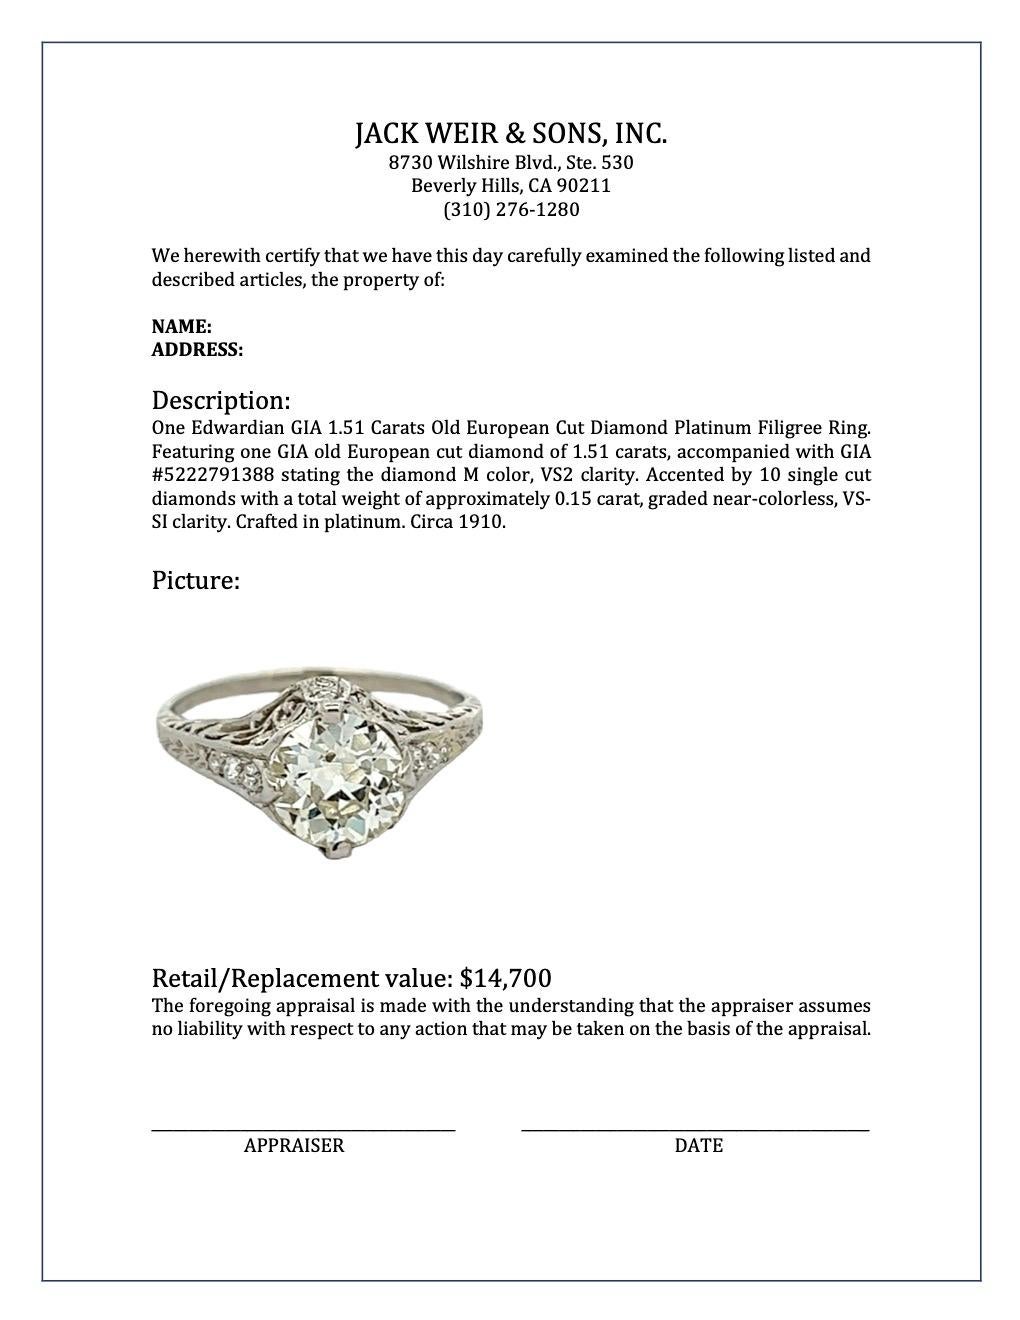 Edwardian GIA 1.51 Carats Old European Cut Diamond Platinum Filigree Ring 4